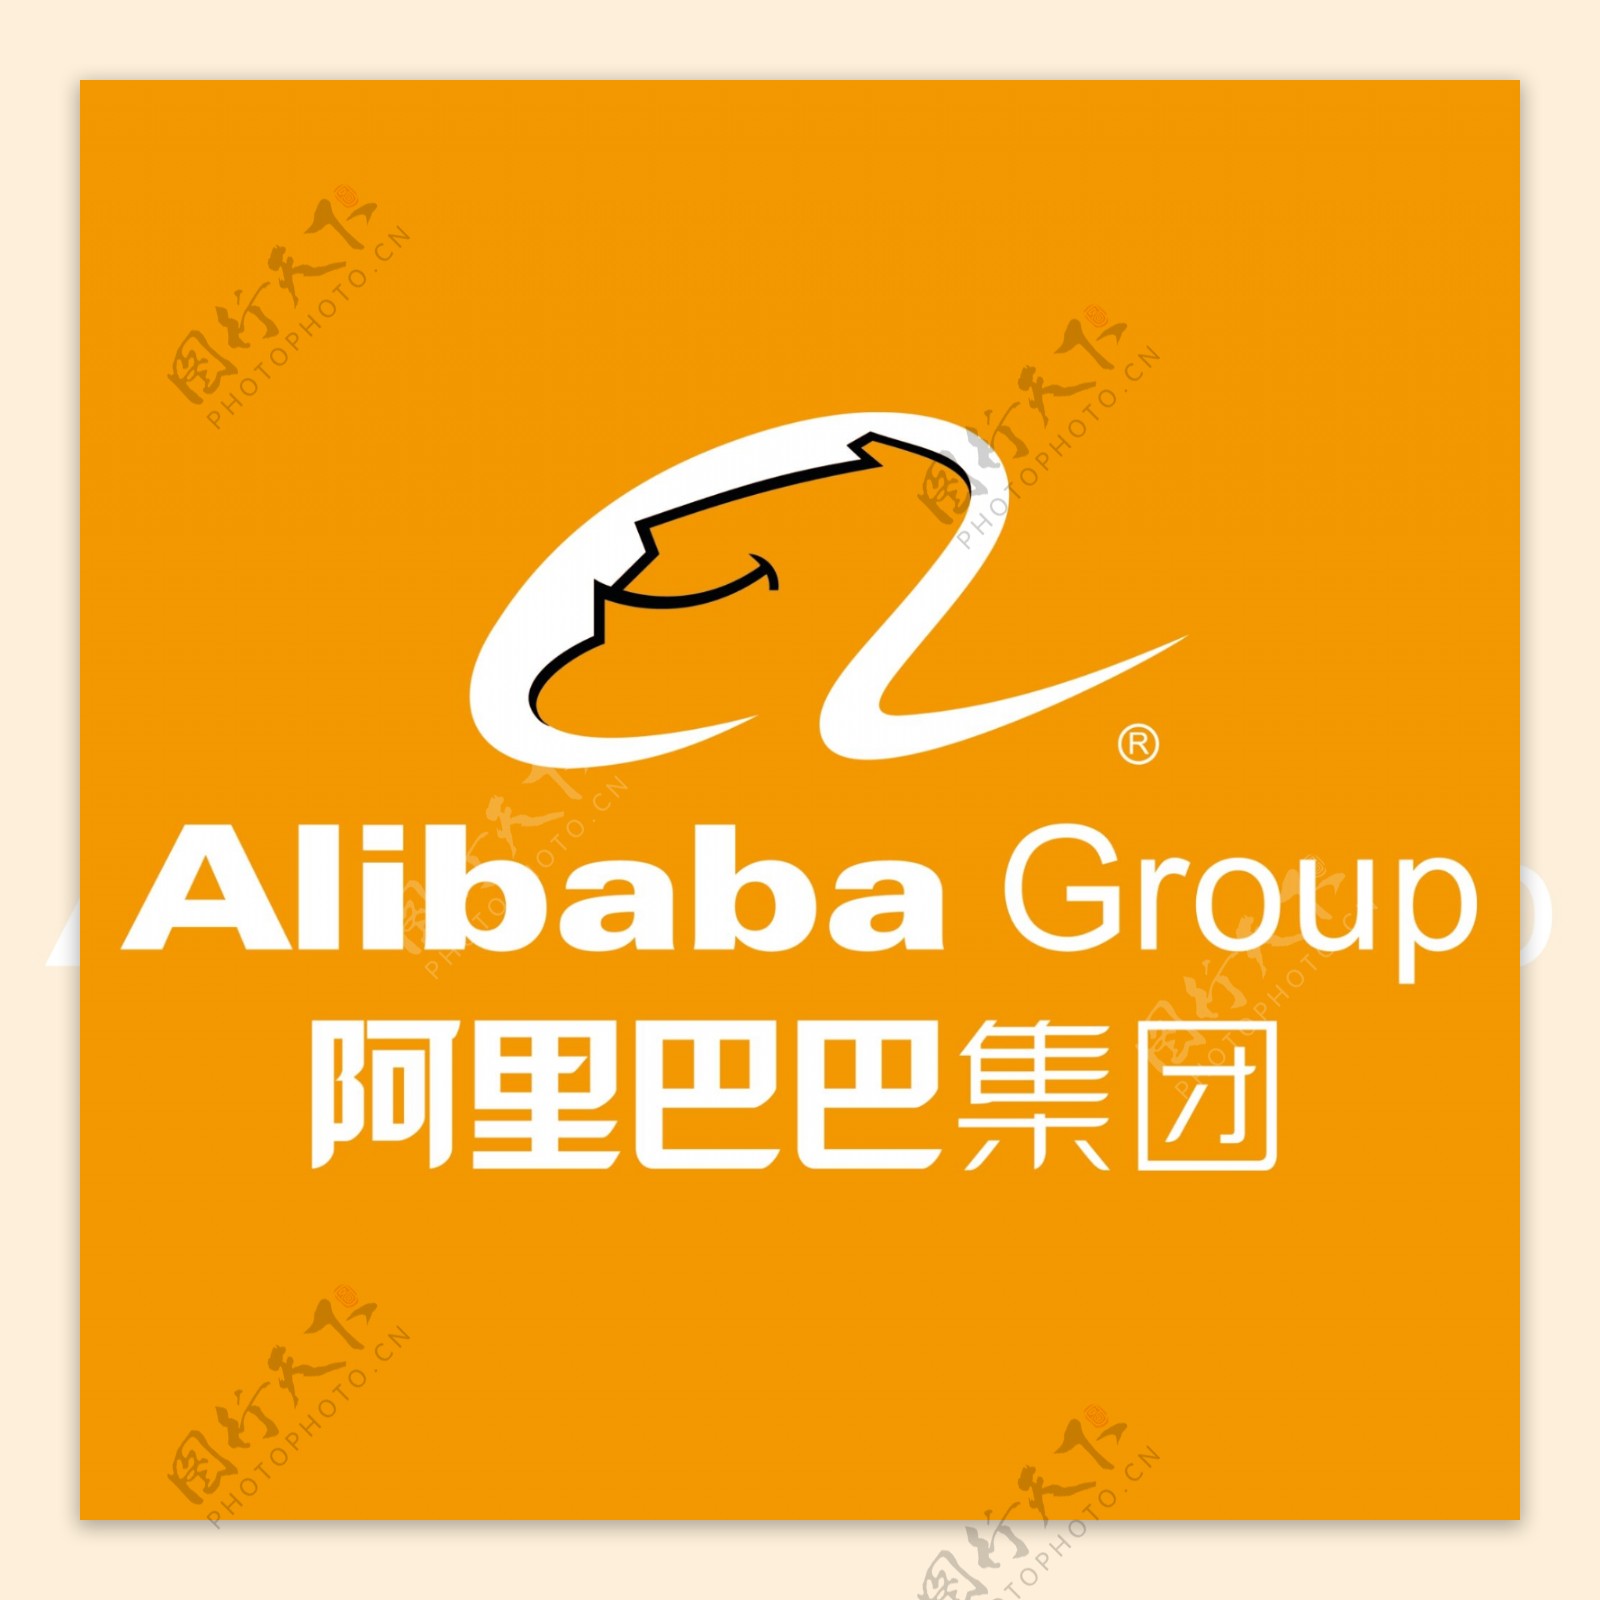 阿里巴巴logo图片-图库-五毛网